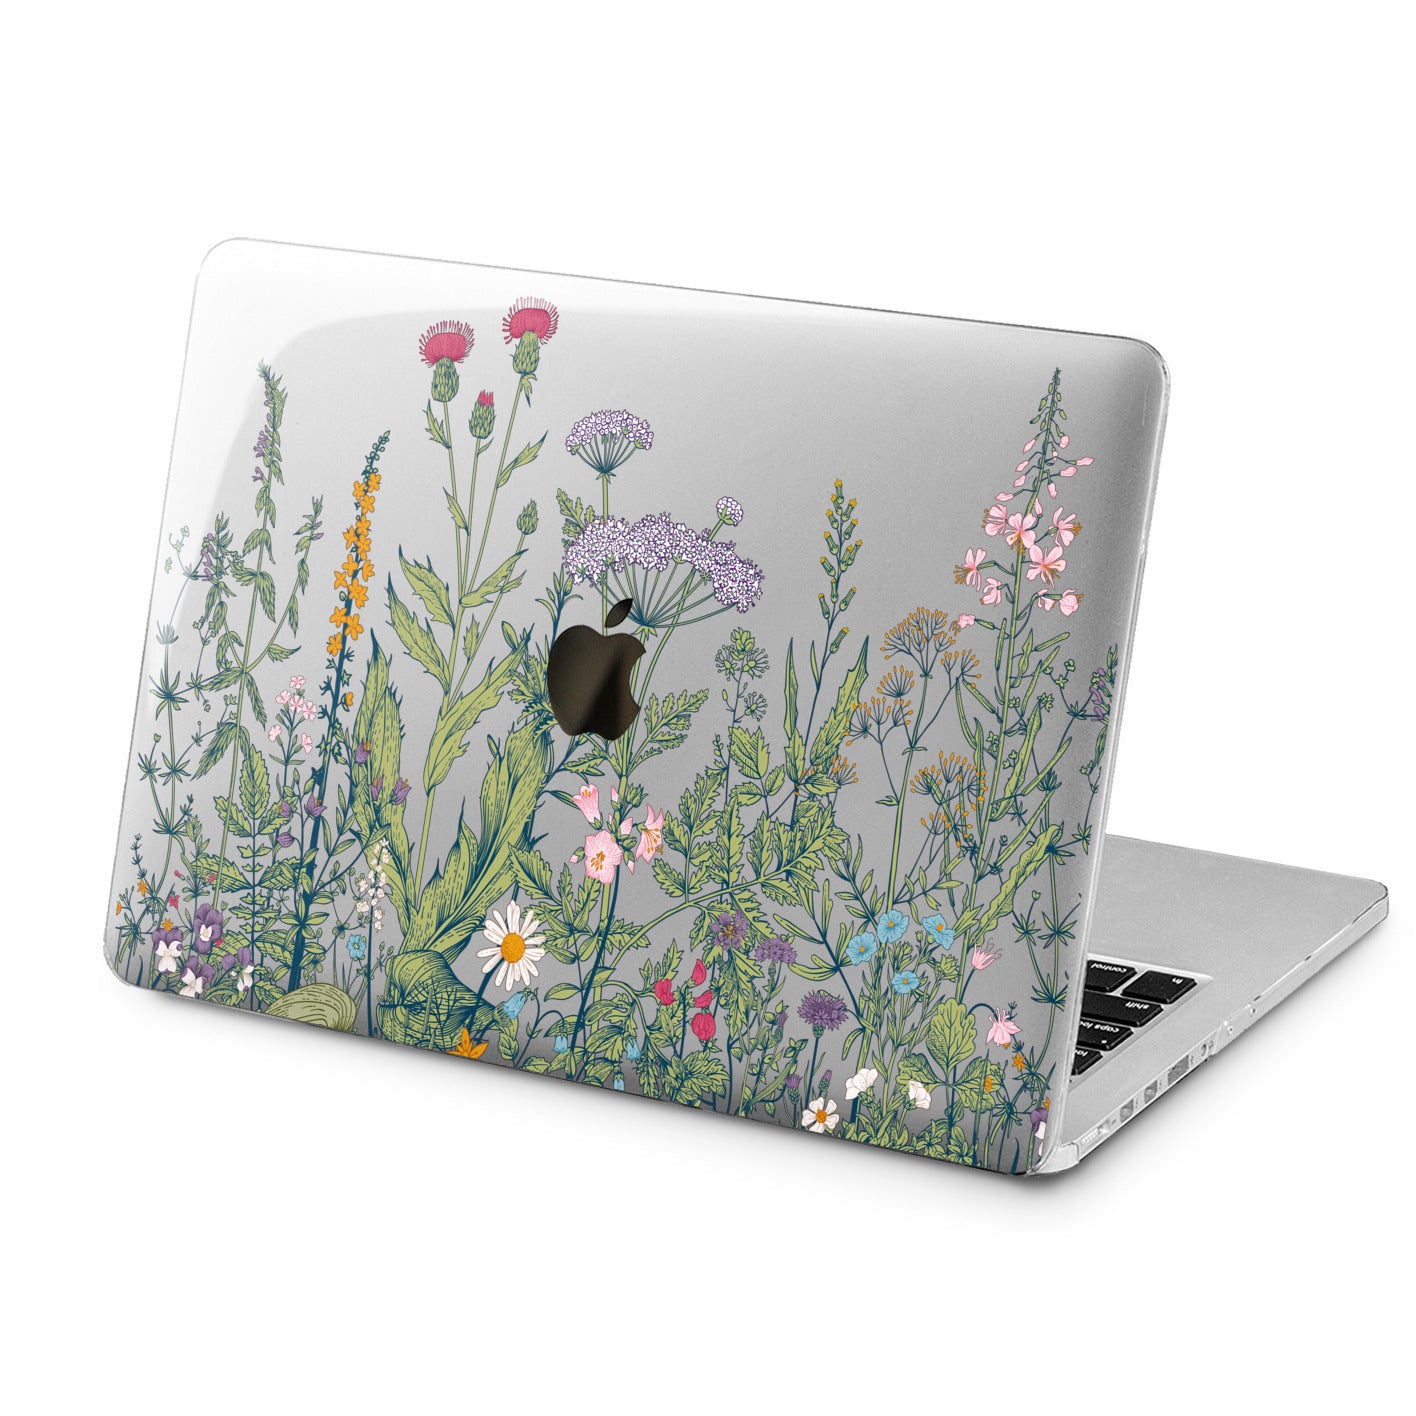 Lex Altern Lex Altern Wild Flowers Case for your Laptop Apple Macbook.